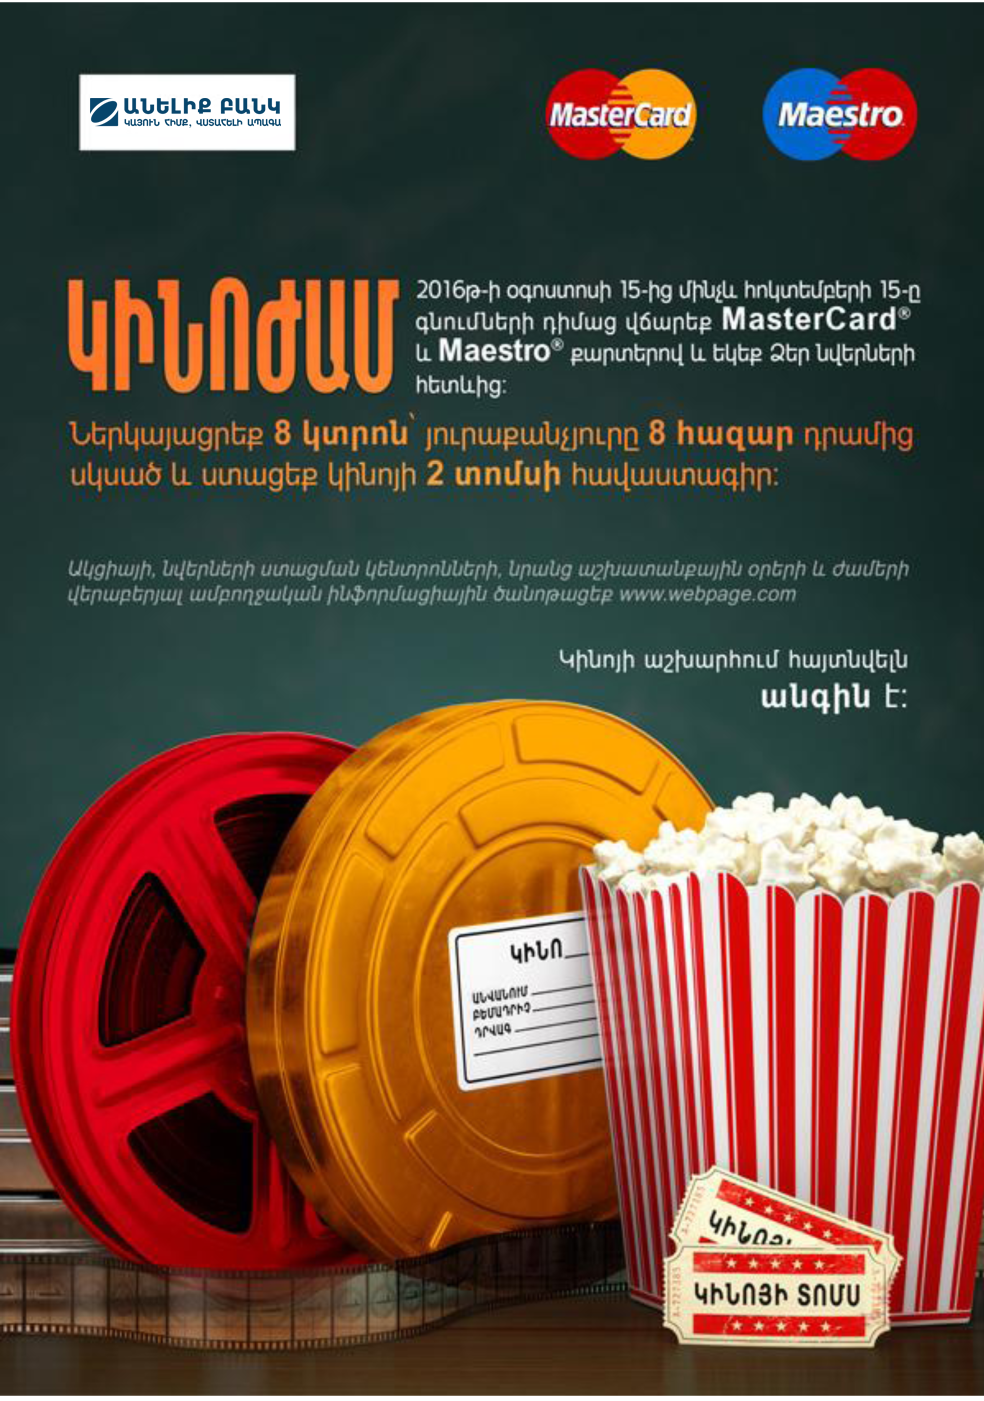 Держатели карт MasterCard Банка ВТБ (Армения) с участием в промо-кампании MasterСard "Очутиться в мире кино - бесценно" получат сертификат на два  билета в кино